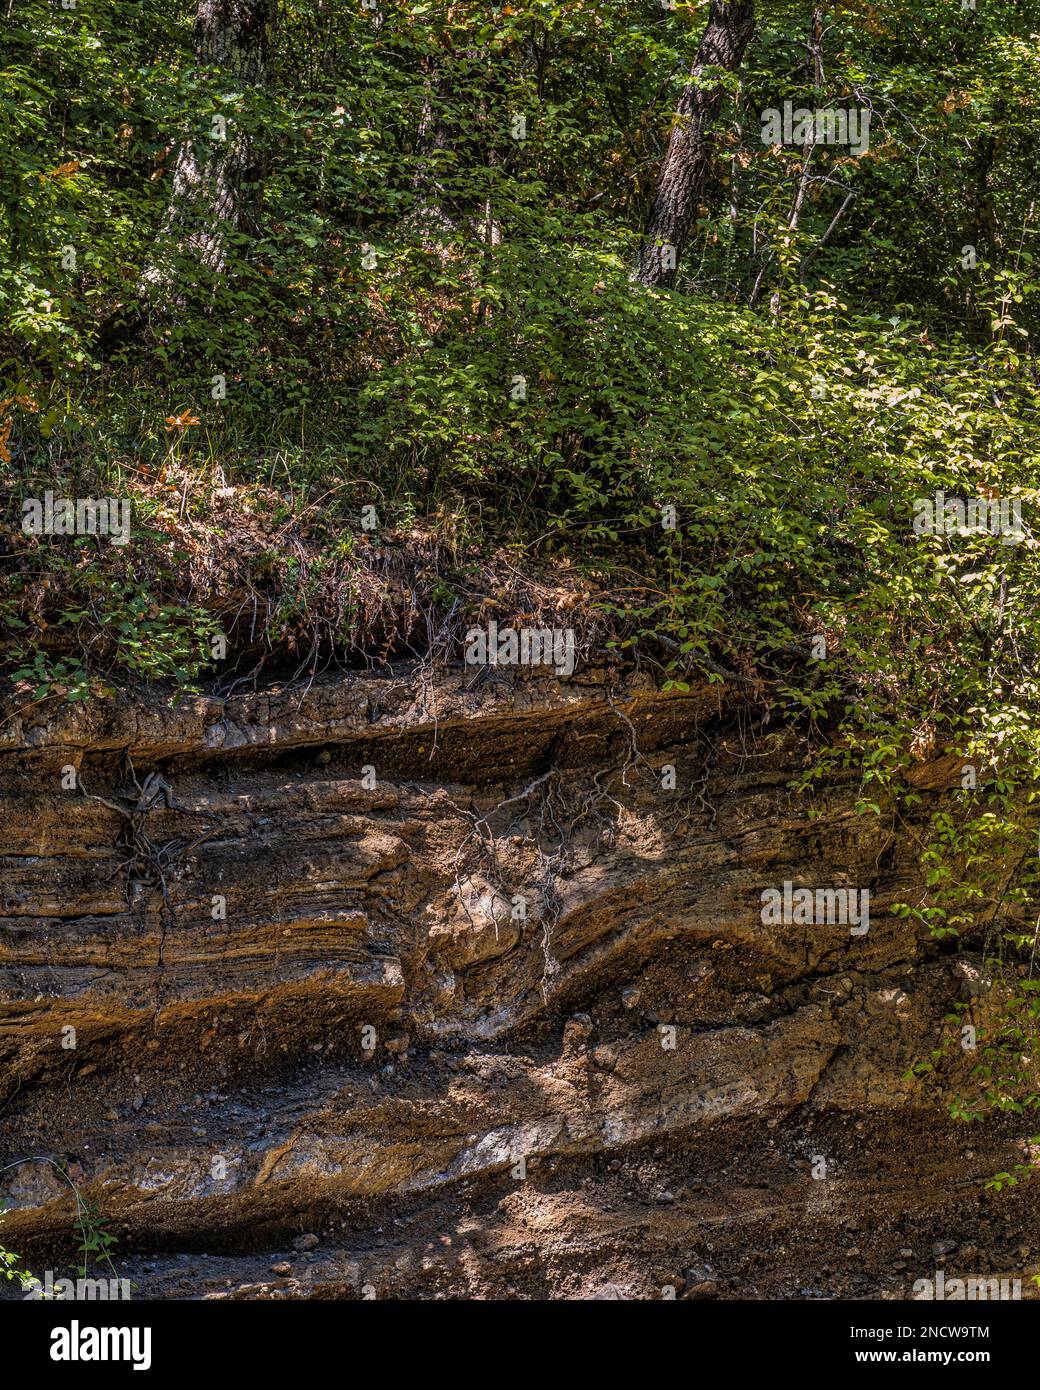 Der Bodenabfluss zeigte, dass die Sedimentschichten durch geologische Kräfte verformt wurden. Stadtpark Turona - Bolsena, Provinz Viterbo, Latium, Italien, Europa Stockfoto